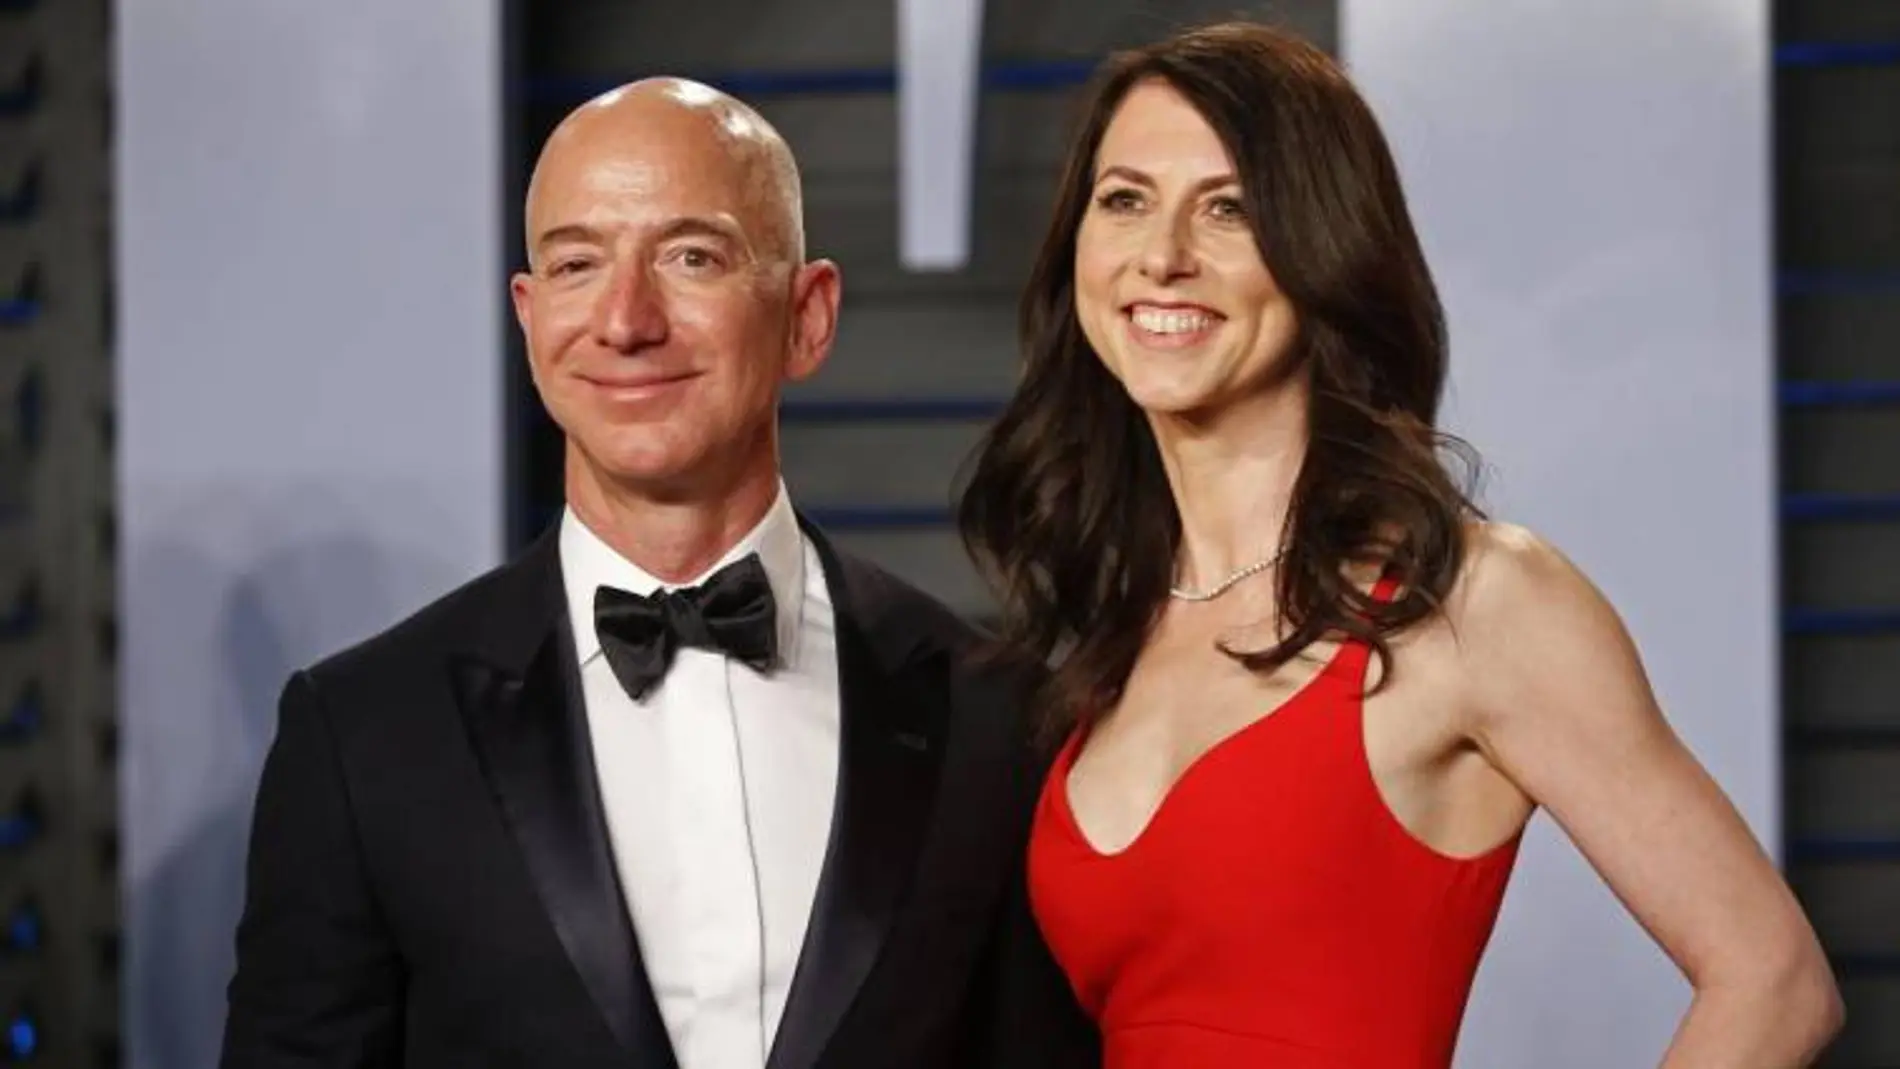 El fundador de Amazon, Jeff Bezos y su exmujer MacKenzie en una imagen de archivo / Reuters